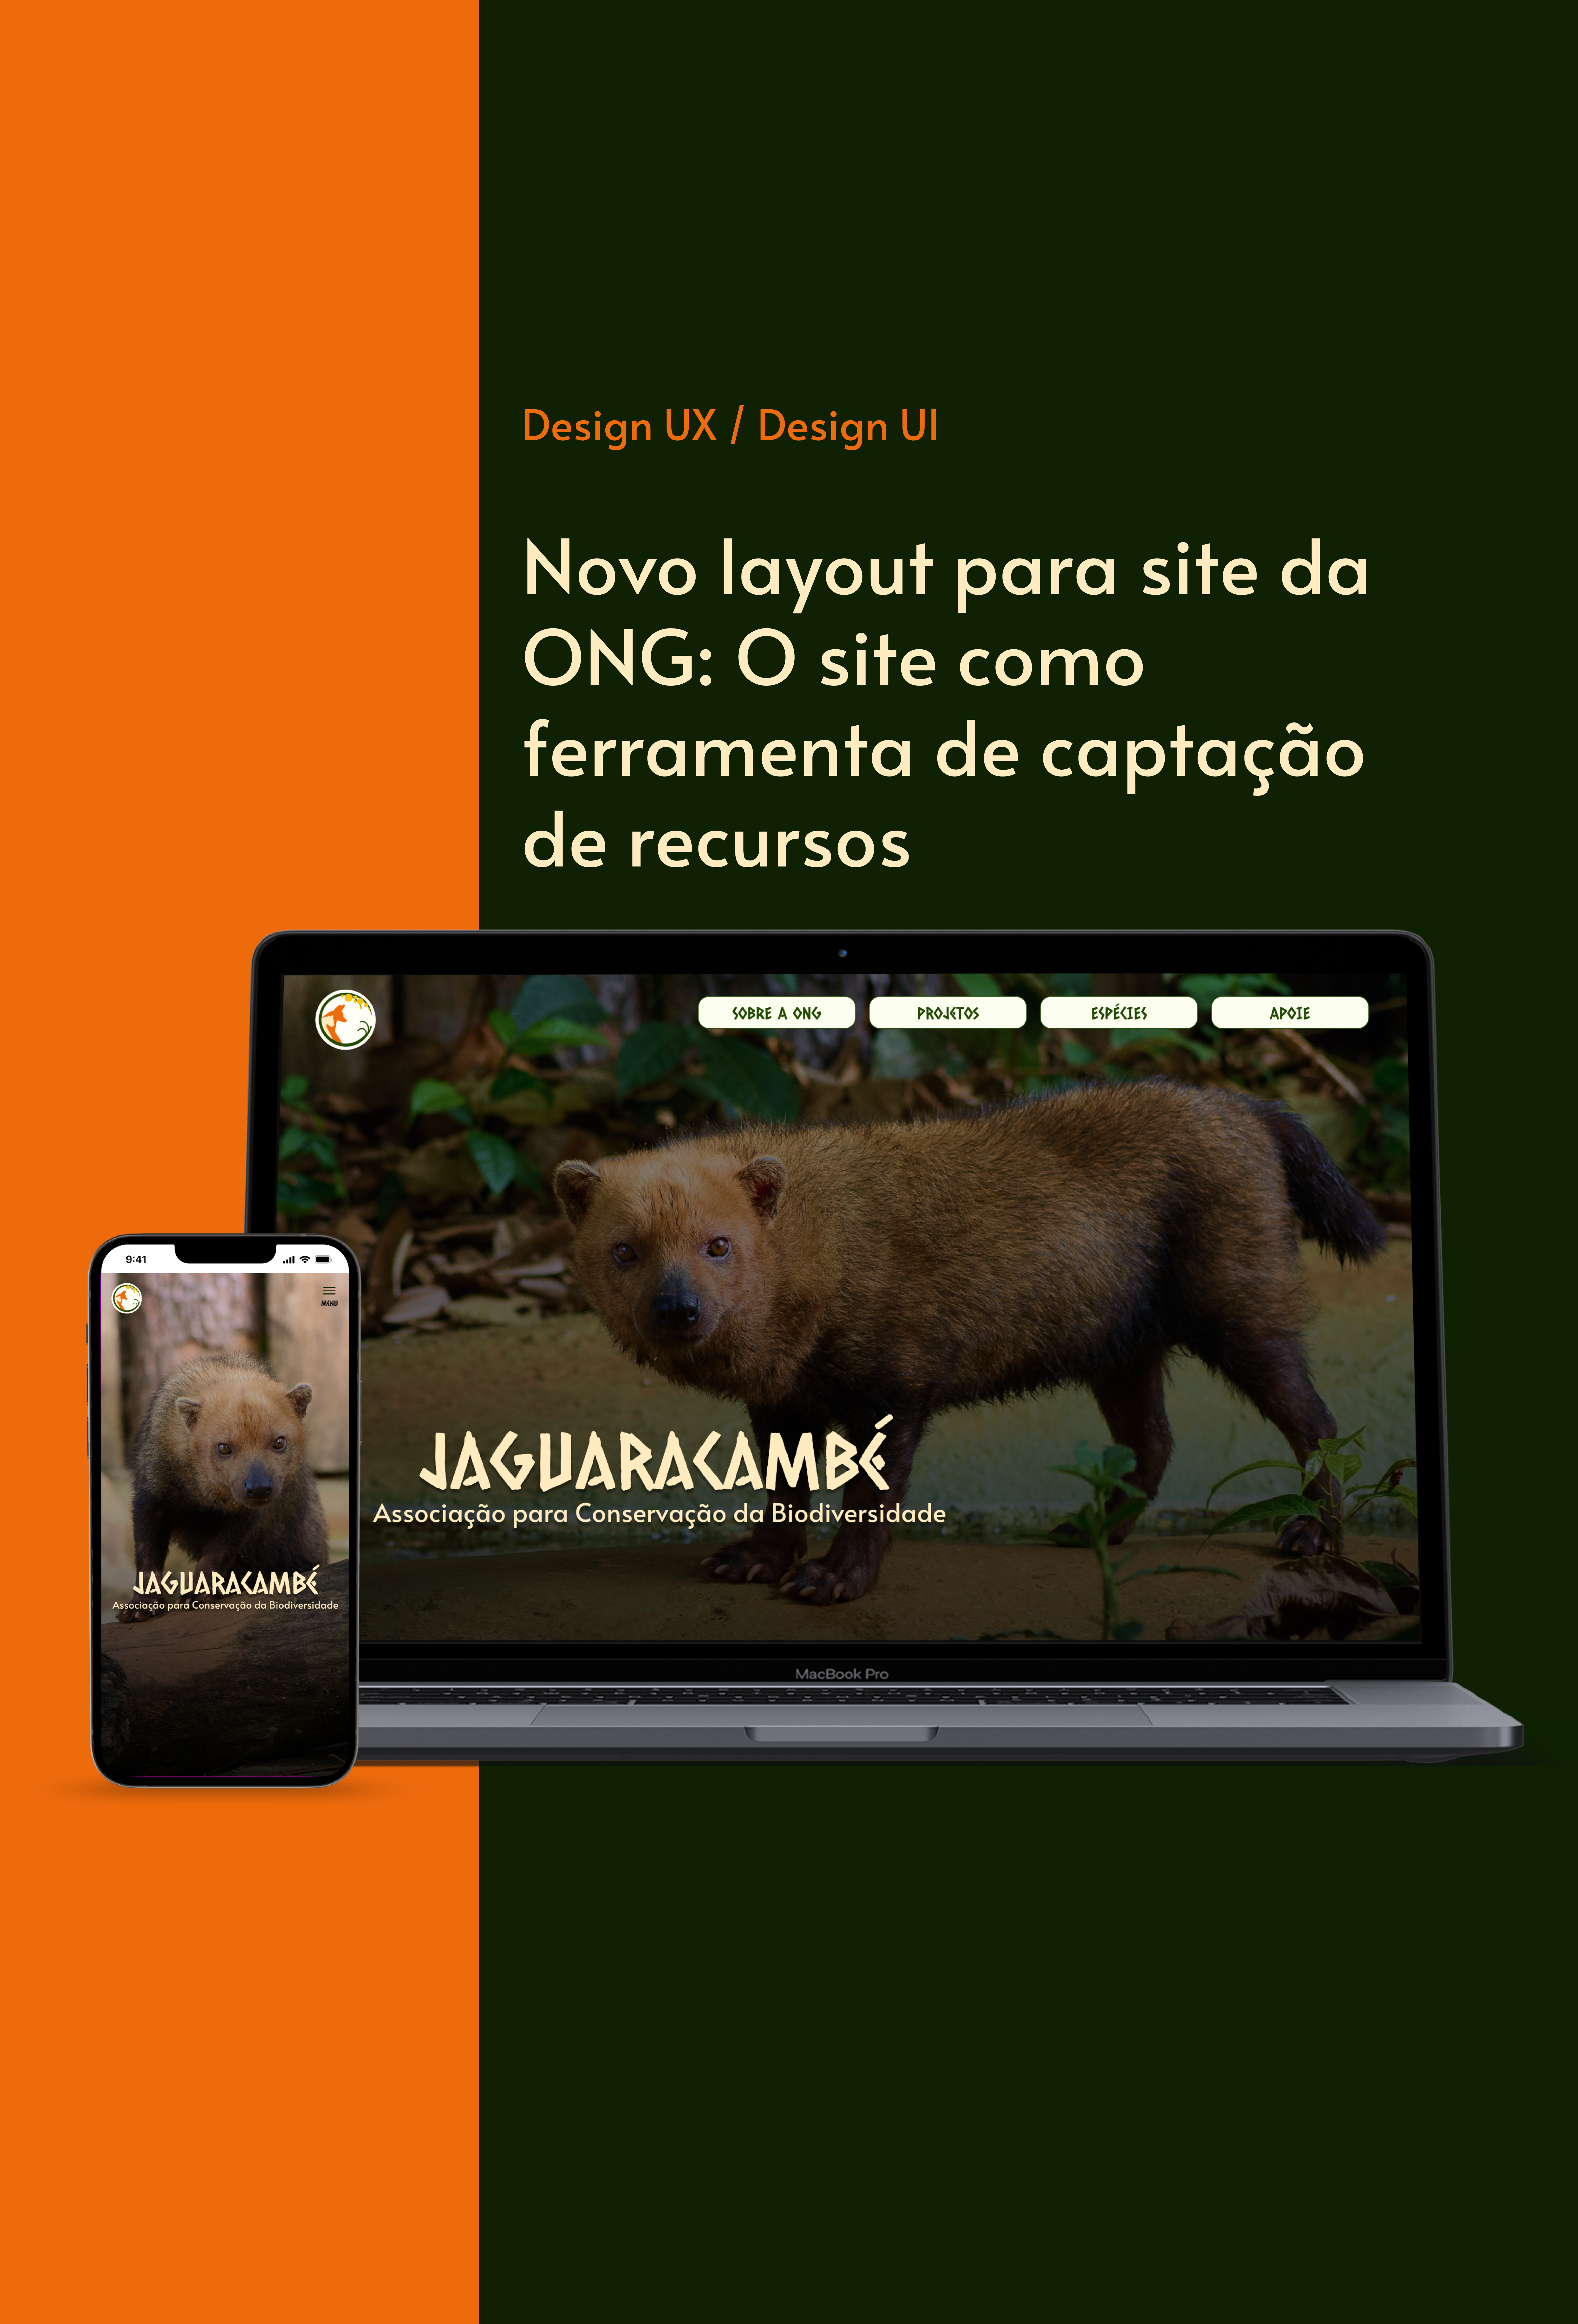 Capa projeto Jaguaracambé